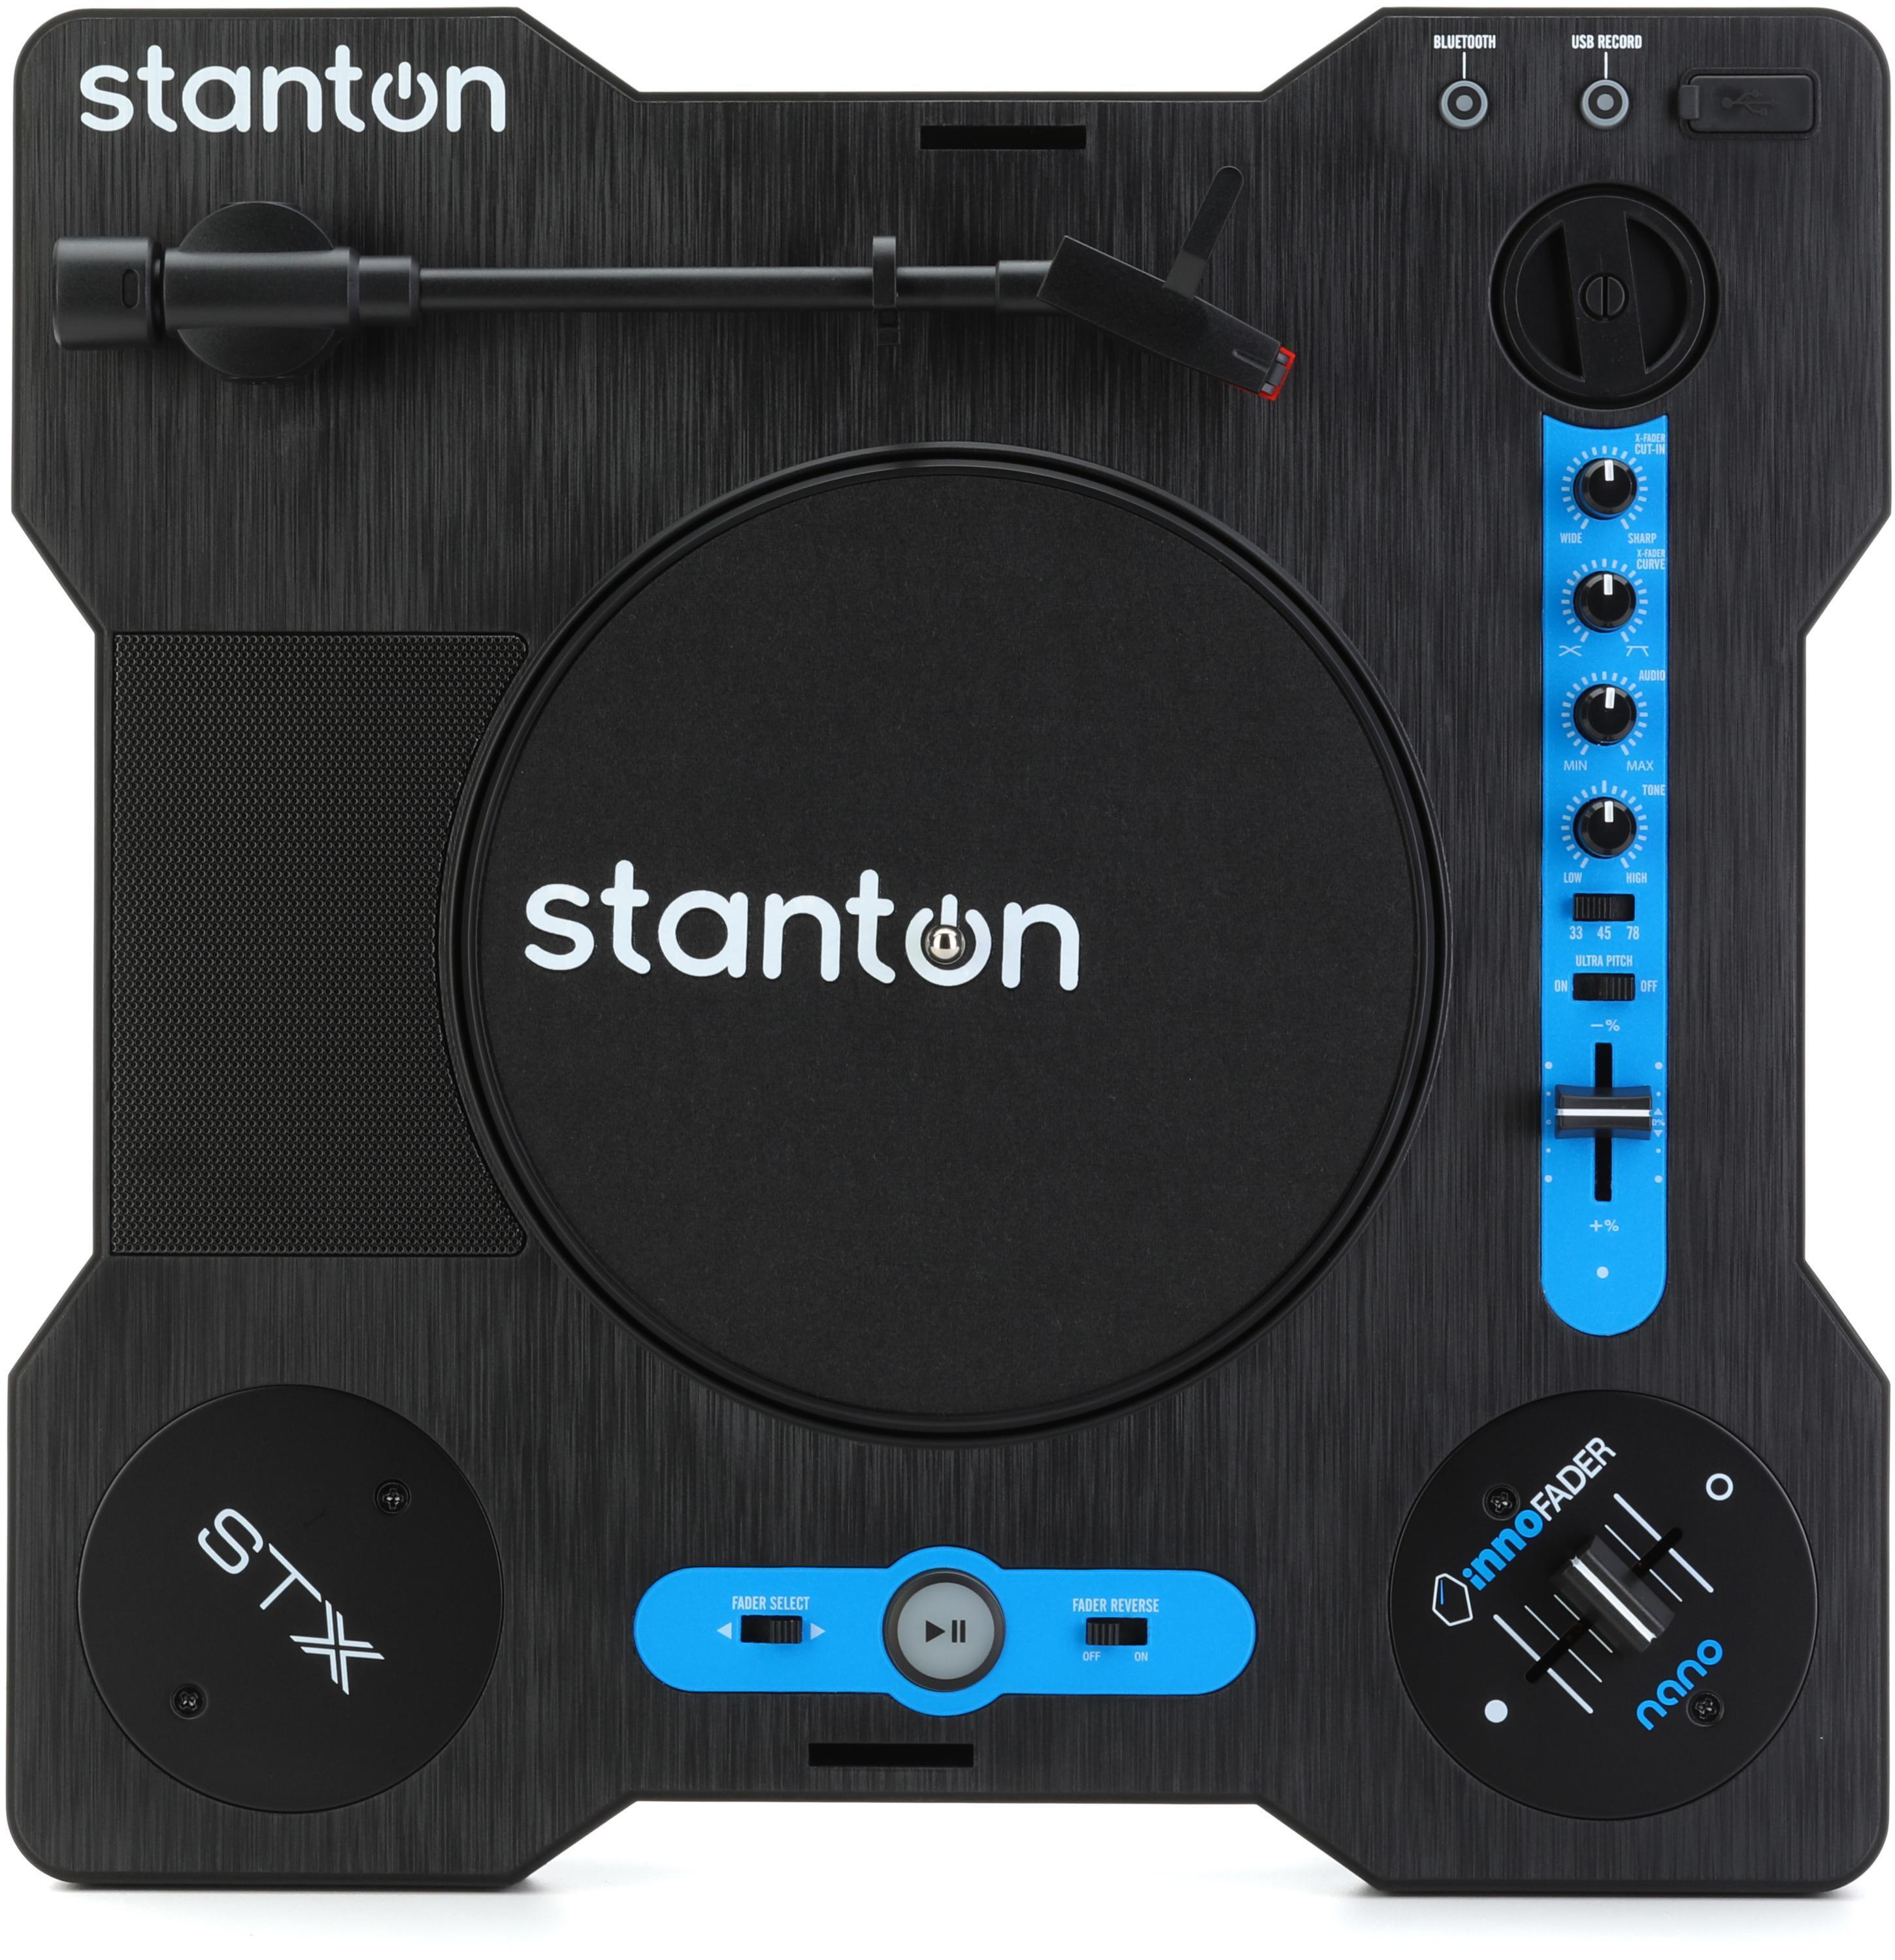 Stanton VC-1 Vinyl Cleaner Kit